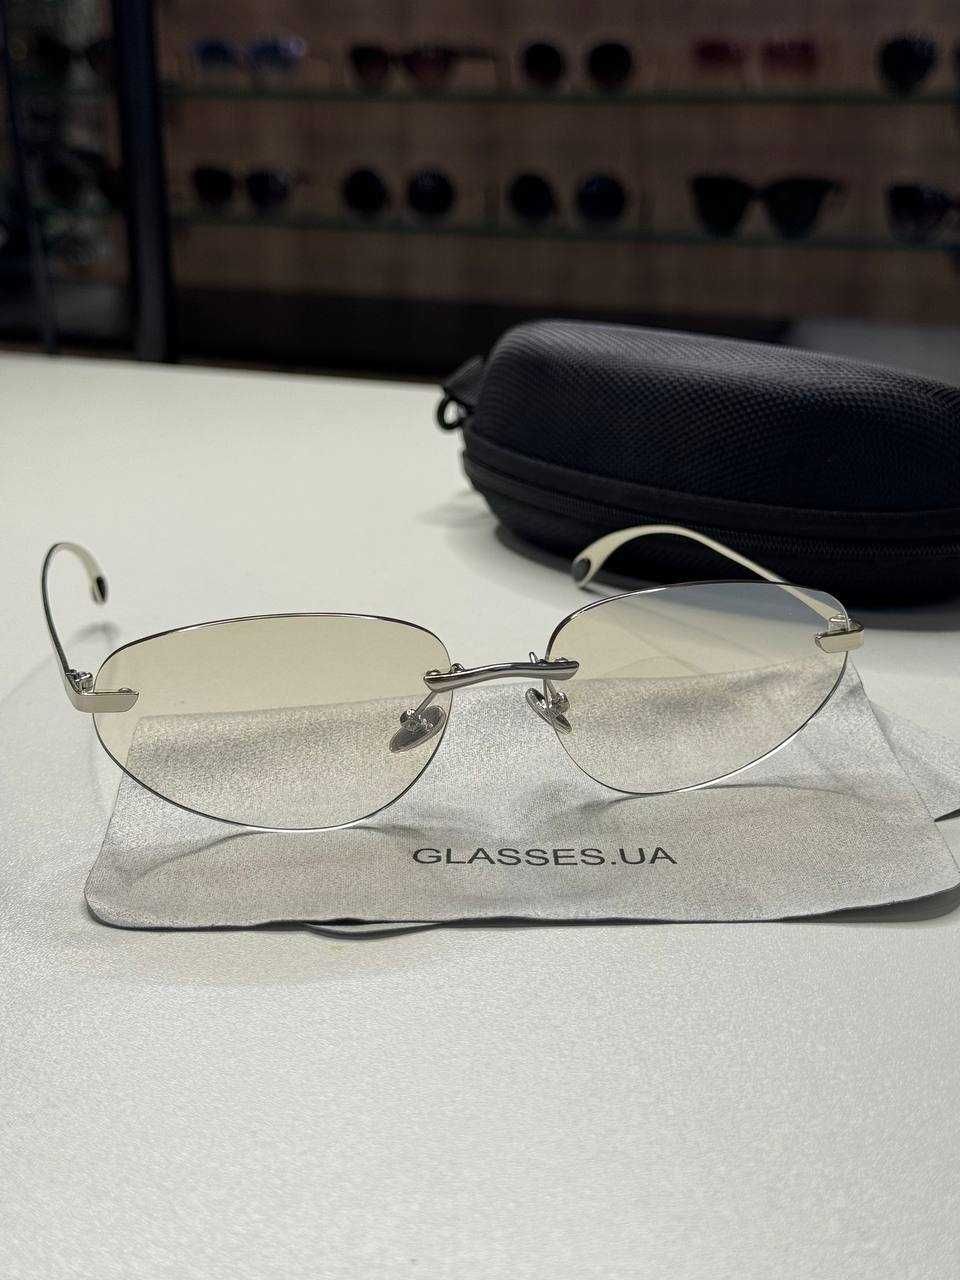 Сонцезахисні окуляри 1 145 грн, арт.6222